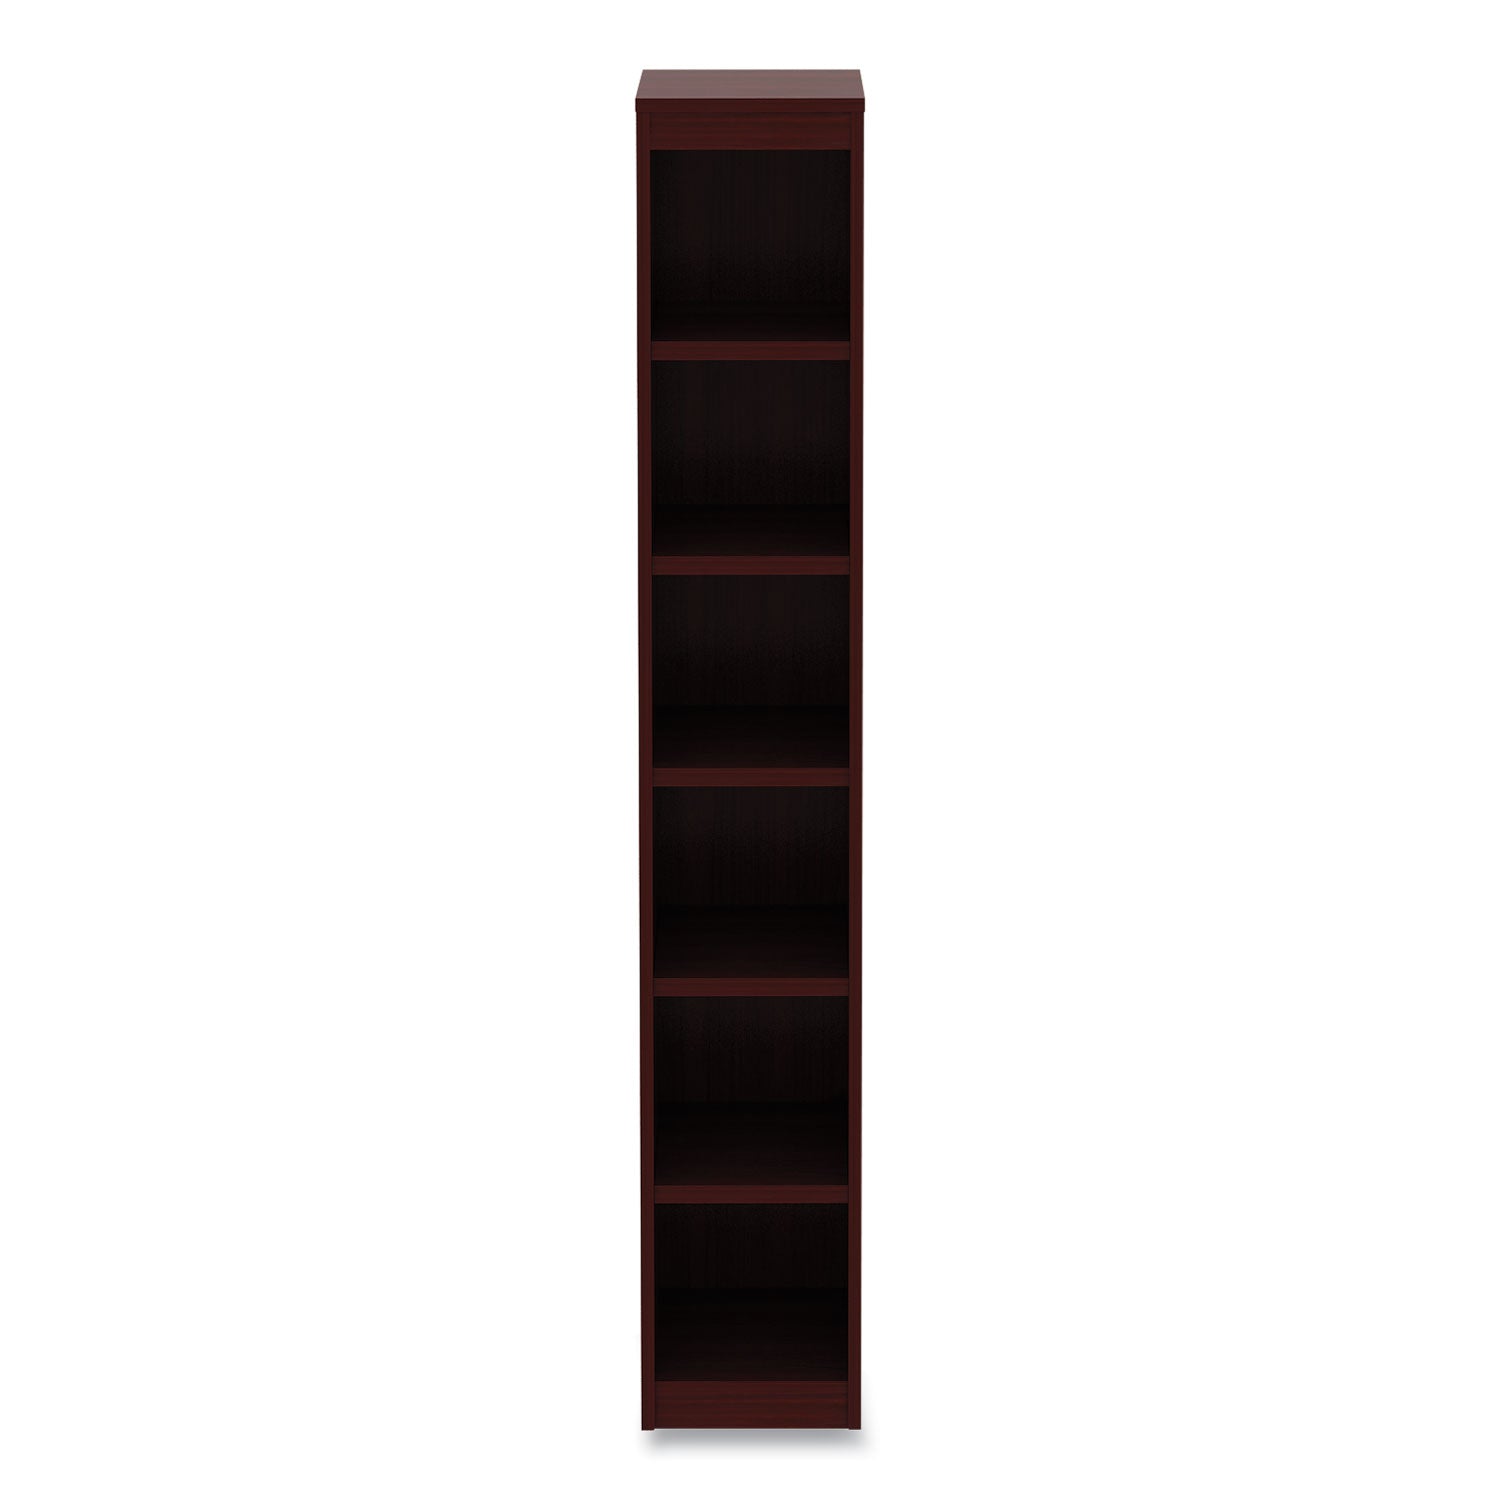 alera-valencia-series-narrow-profile-bookcase-six-shelf-1181w-x-1181d-x-7173h-mahogany_aleva67212my - 4